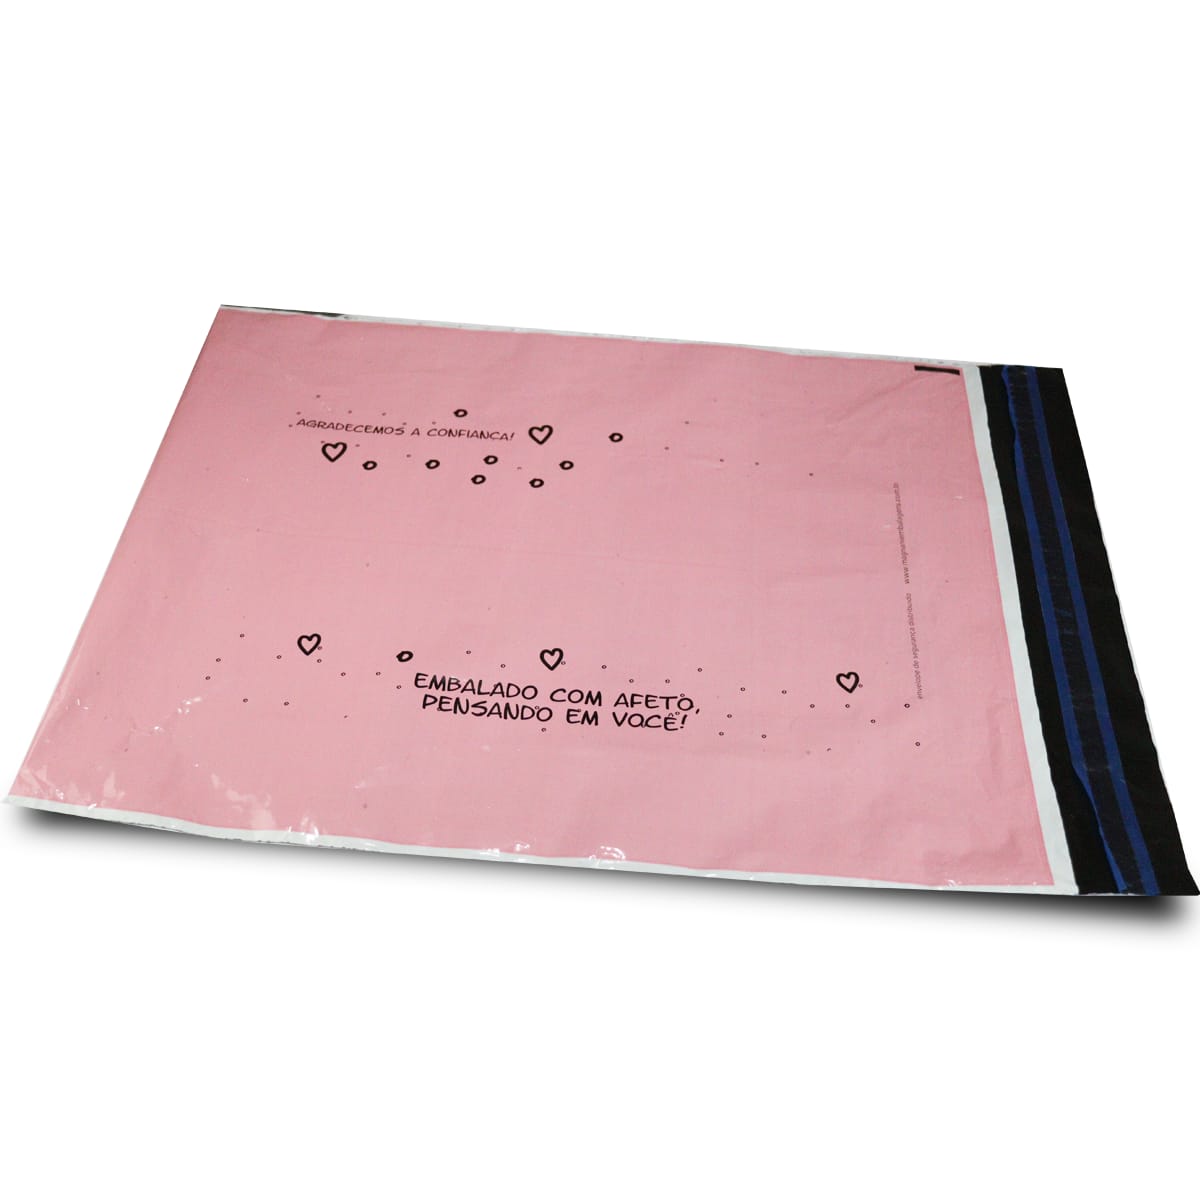 Envelope de Segurança Rosa G 40x50 Biodegradável, sem bolha